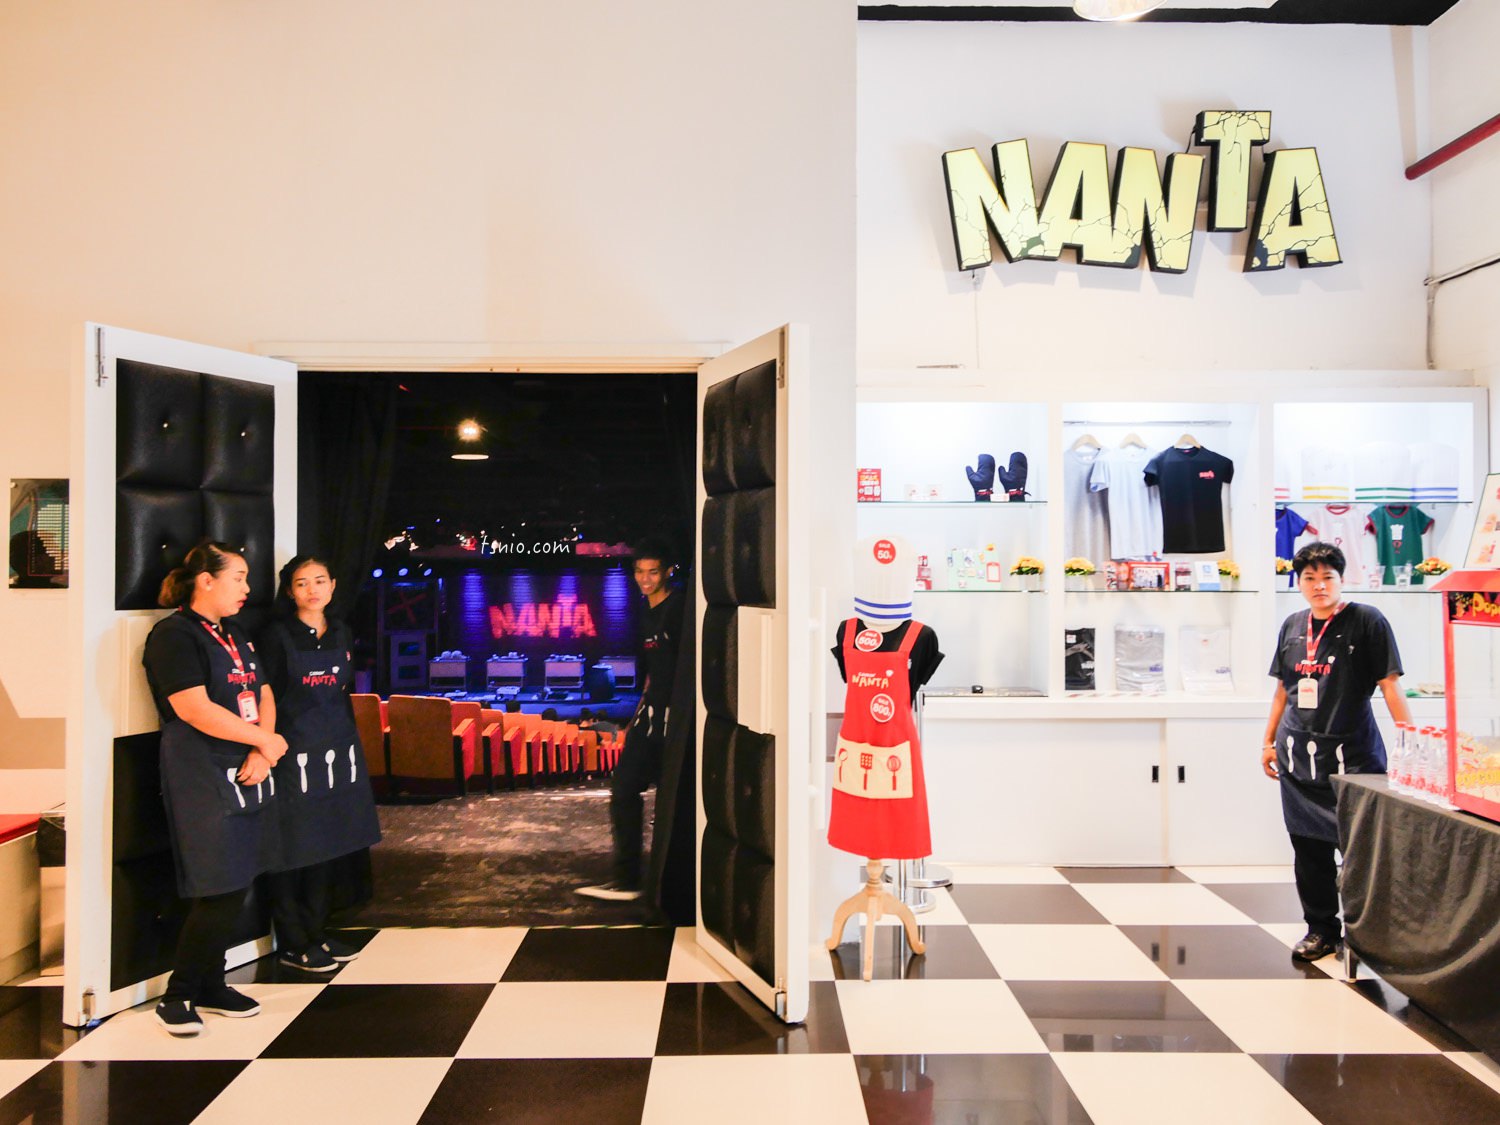 曼谷景點 亂打秀 NANTA 來自韓國的無語言表演 曼谷劇場推薦